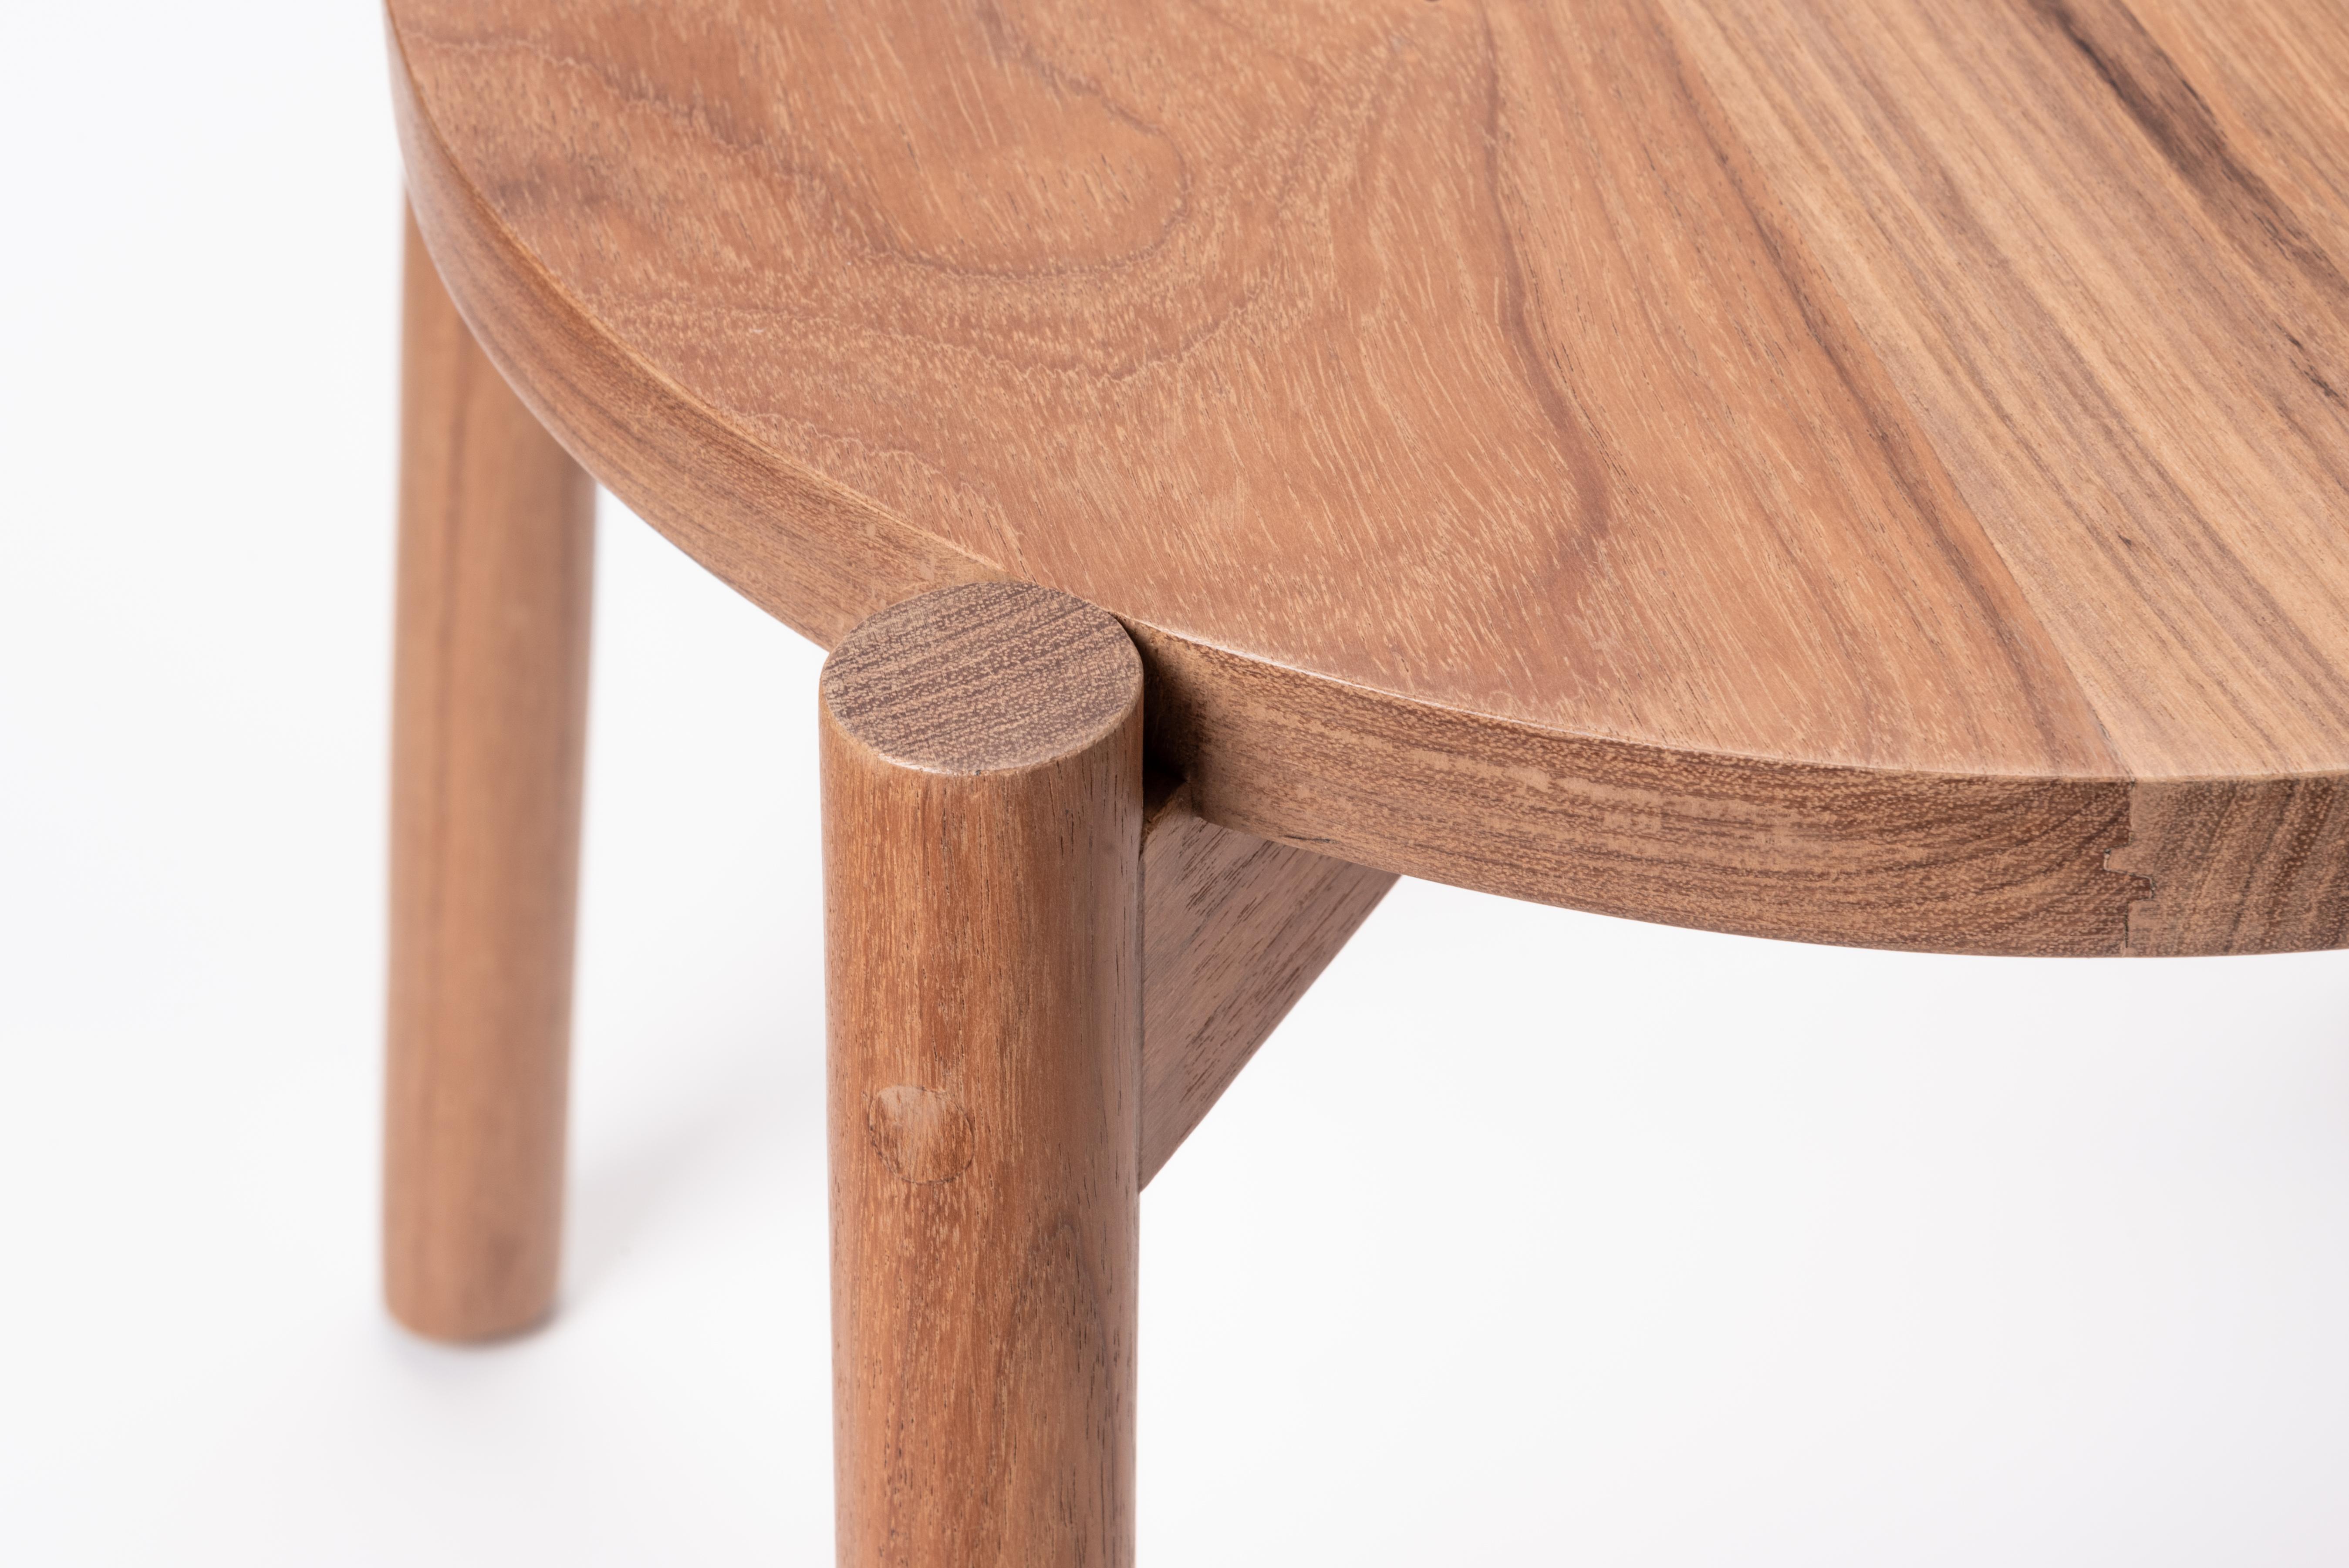 Ein Stuhl für alle Gelegenheiten, von gewöhnlich bis außergewöhnlich. Dieses Möbelstück ist eine Synthese aus Struktur und Form, die sich durch ihre konstruktive Klarheit und stille Schönheit auszeichnet. 

Dieser Stuhl aus Tzalam-Holz wird von